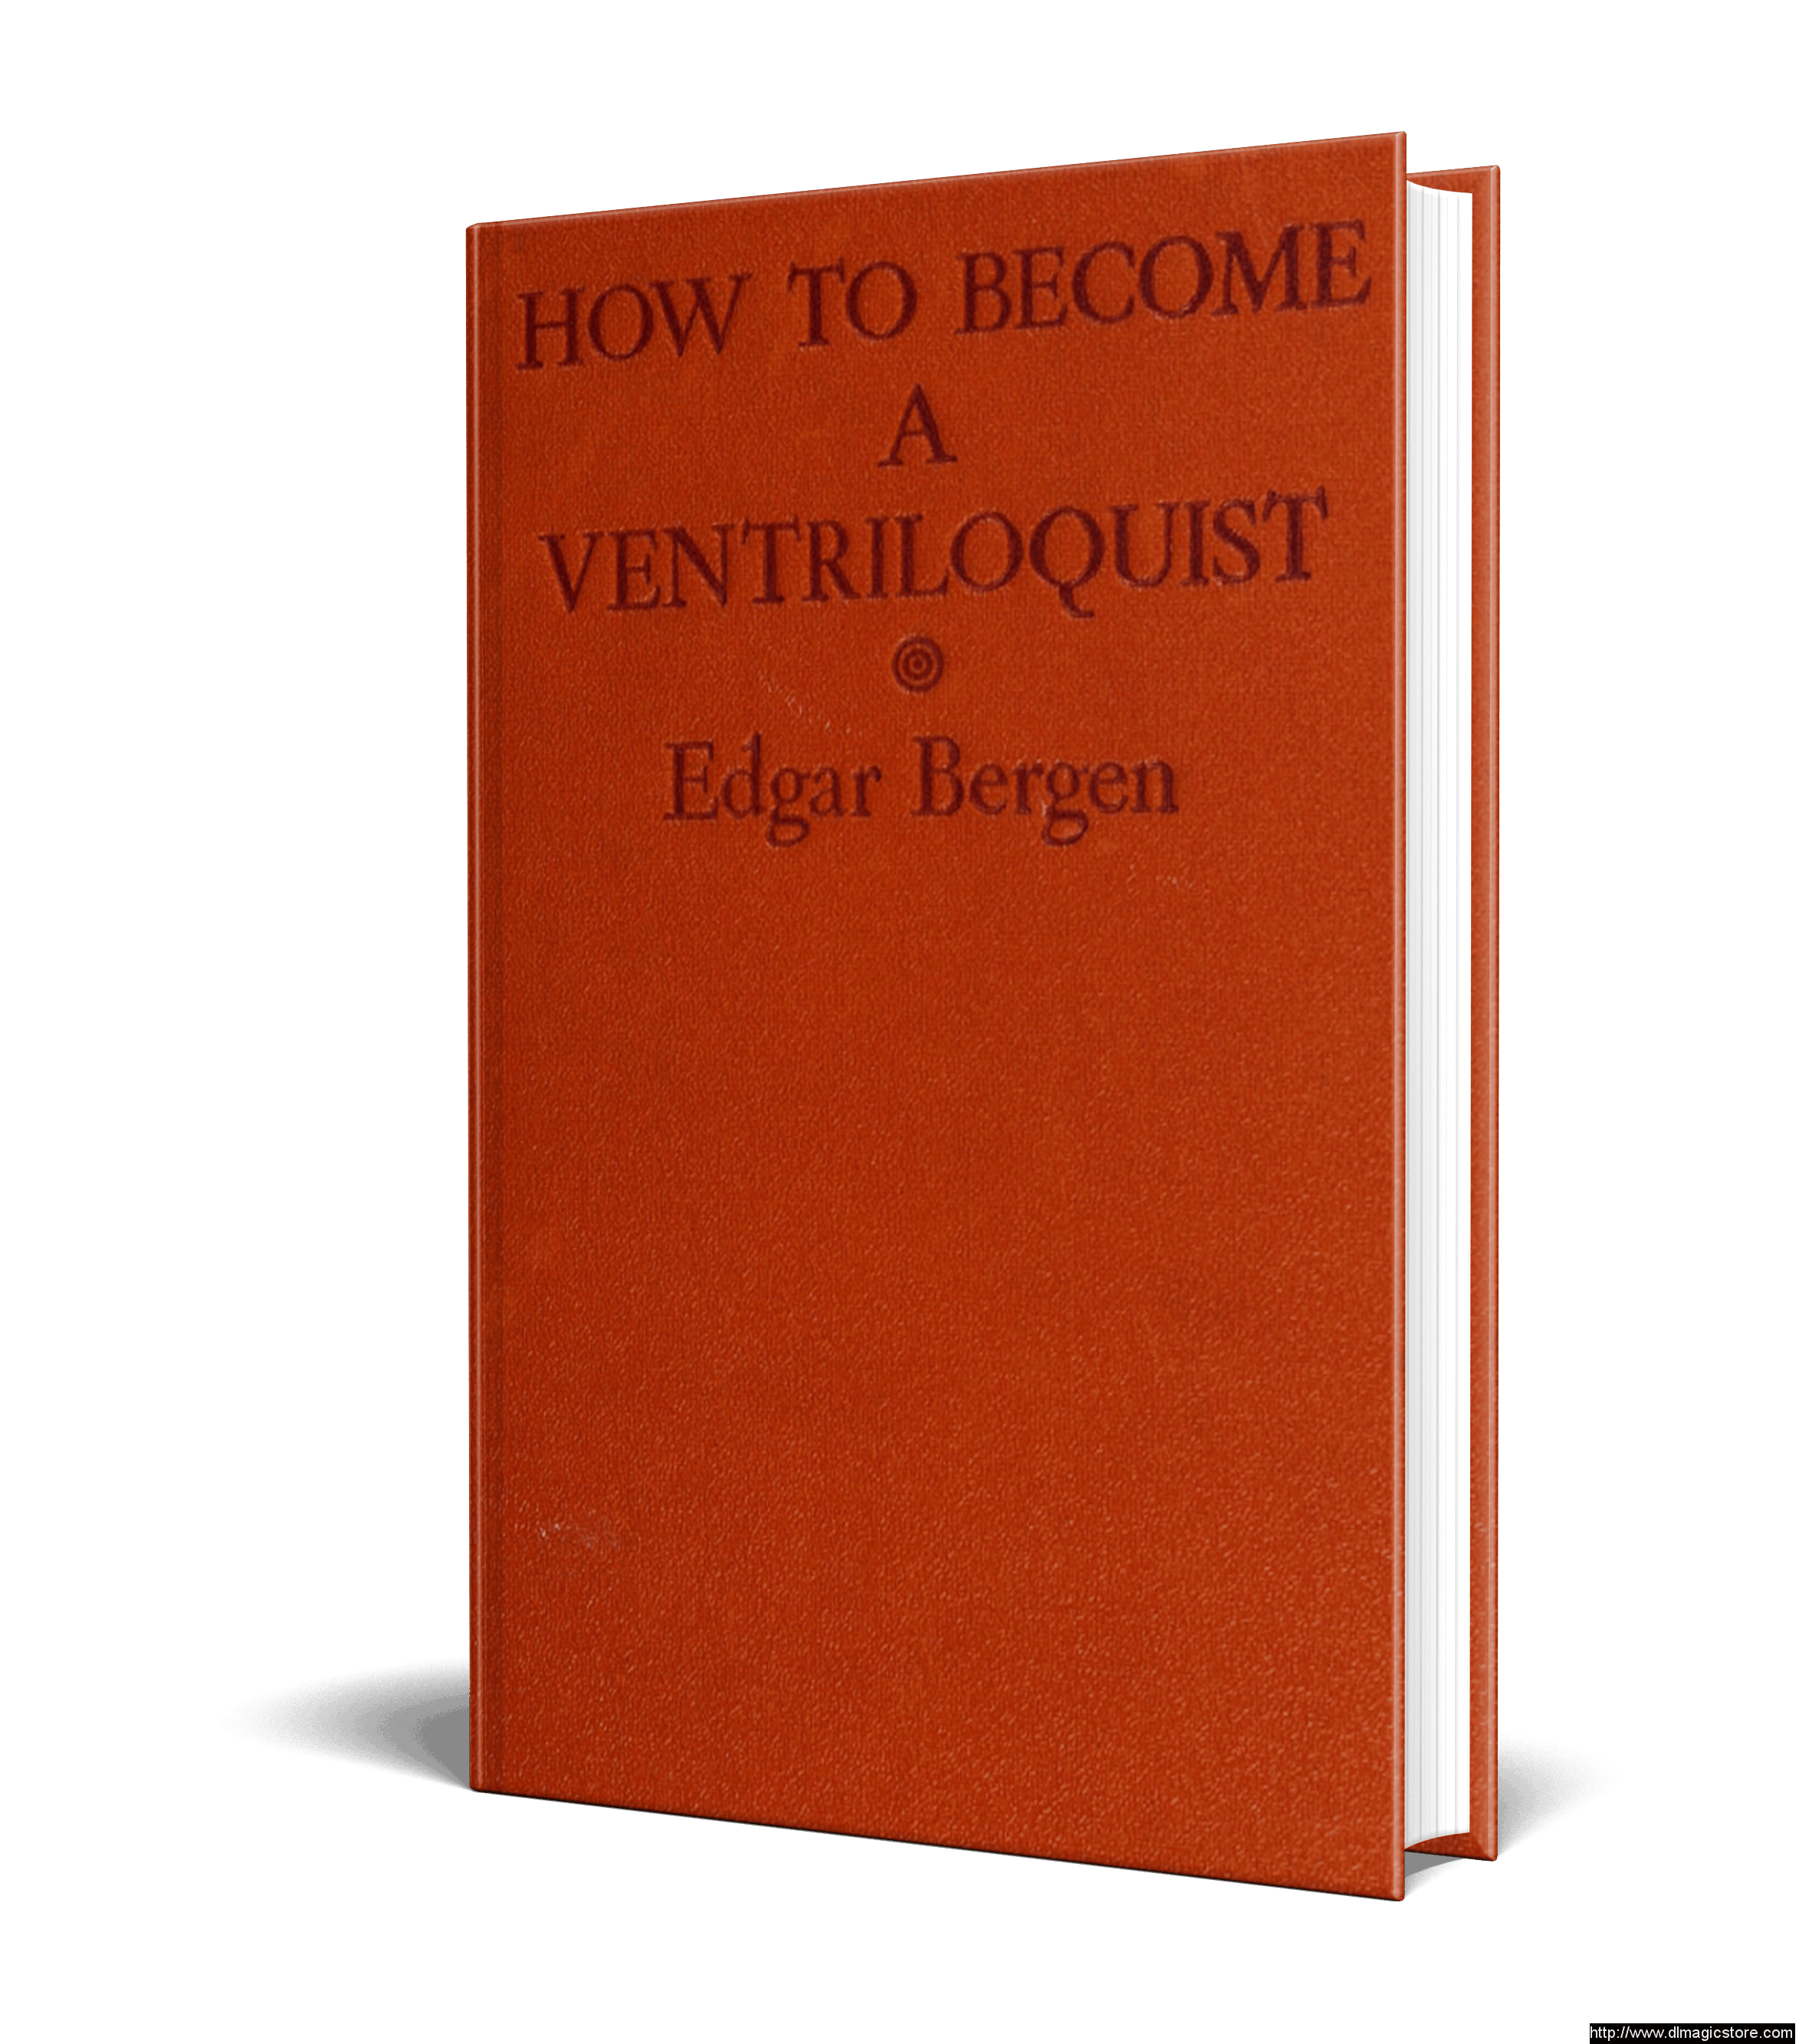 Edgar Bergen – How to Become a Ventriloquist